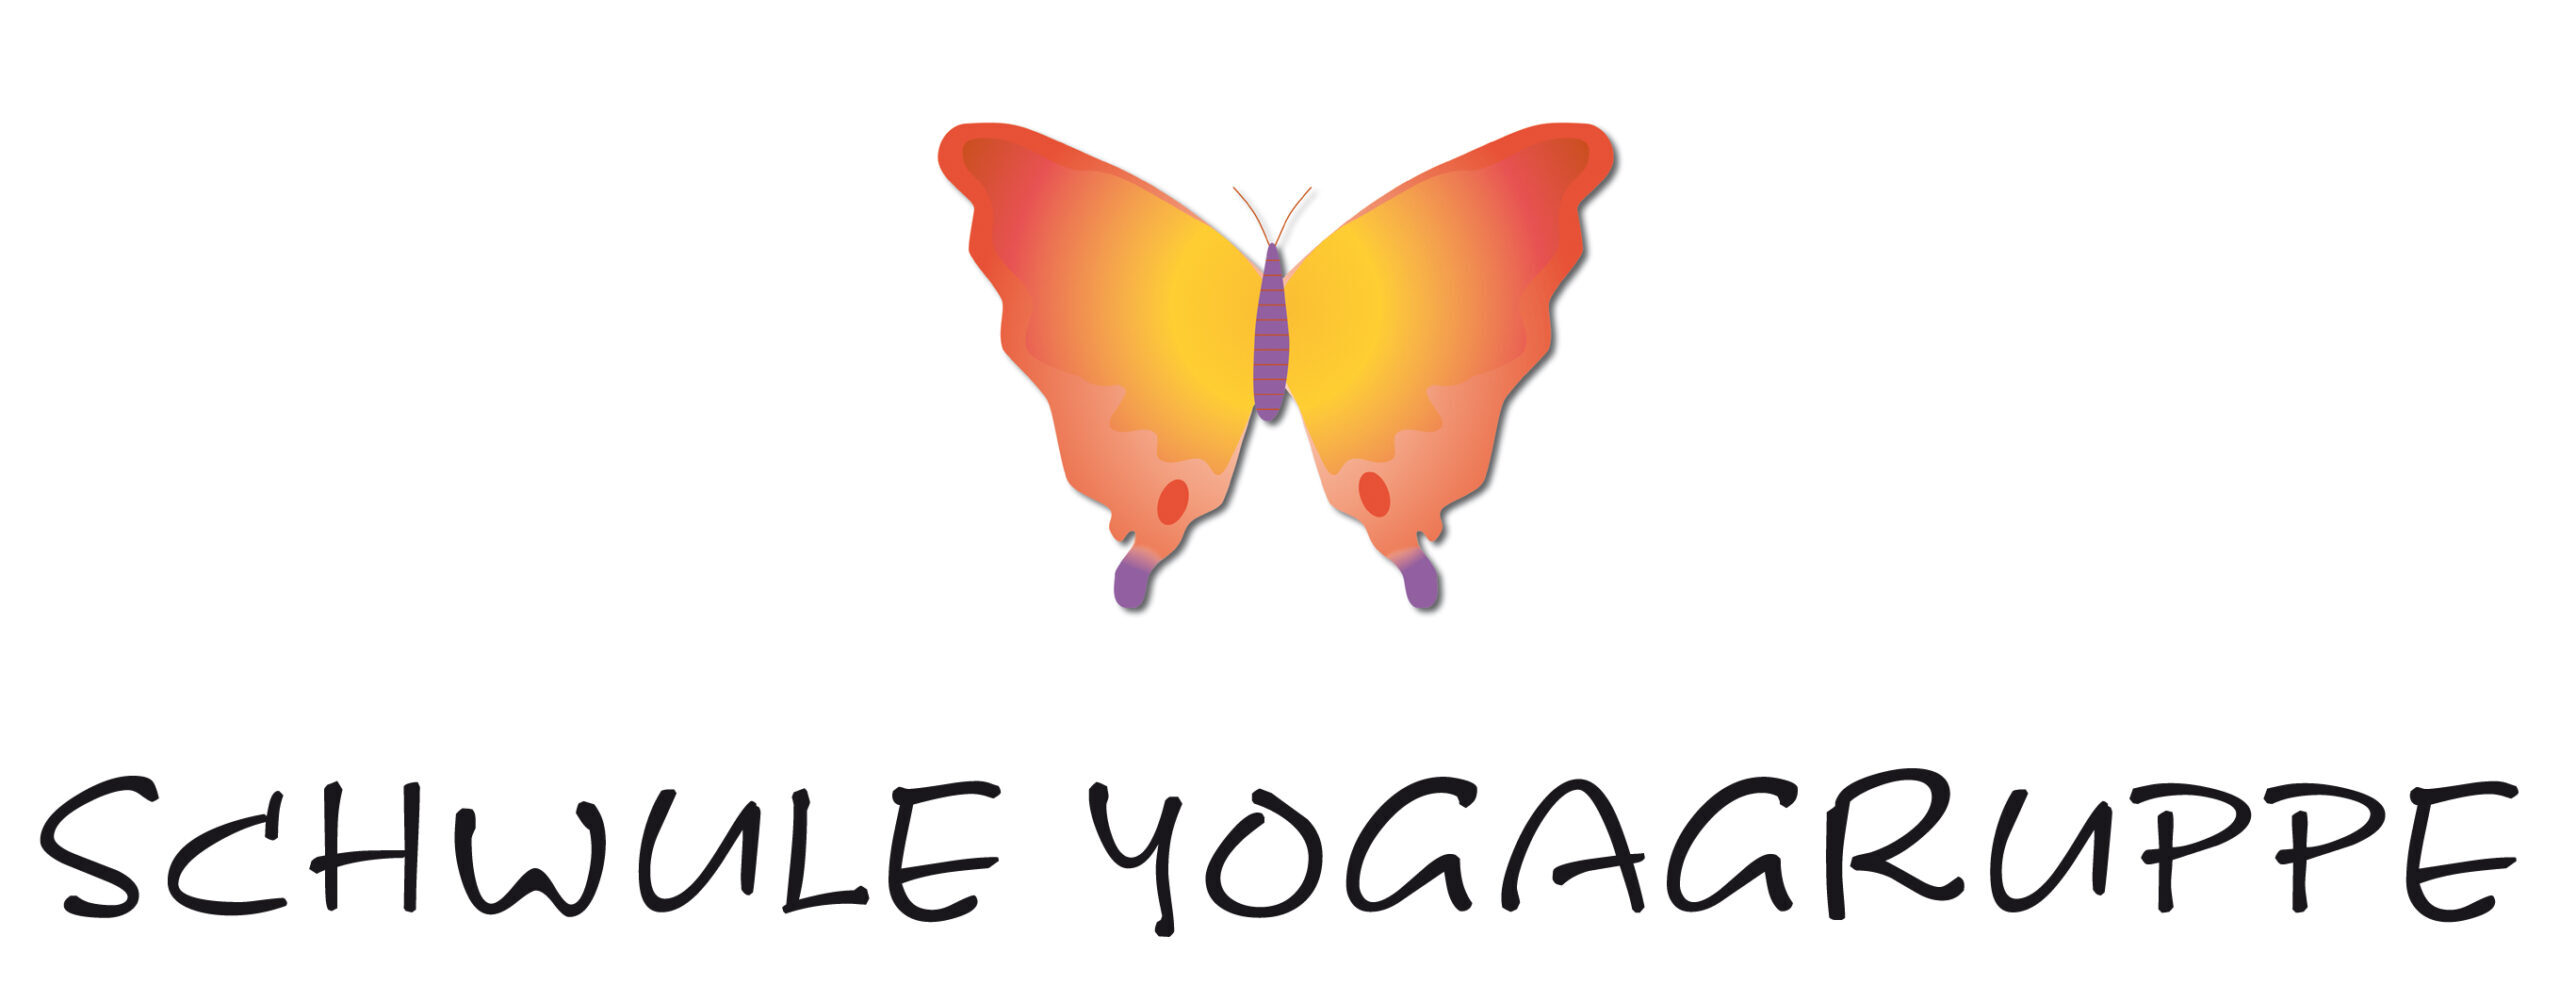 Schwule Yogagruppe